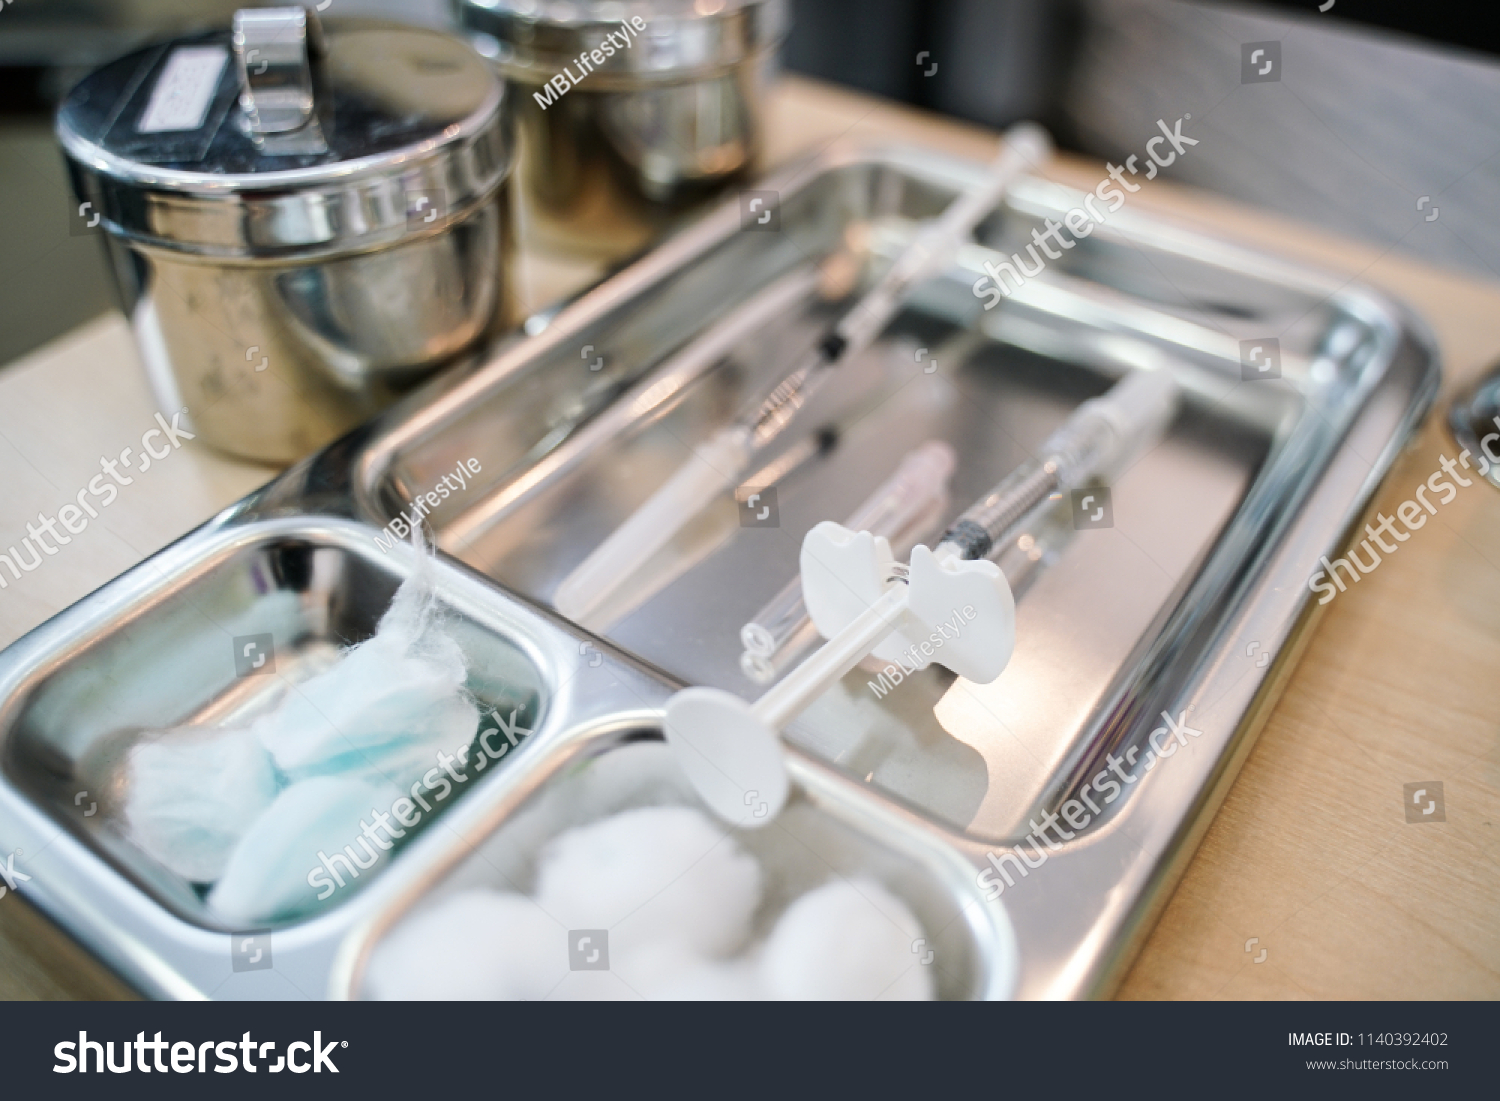 перекрывание стерильного стола в процедурном кабинете